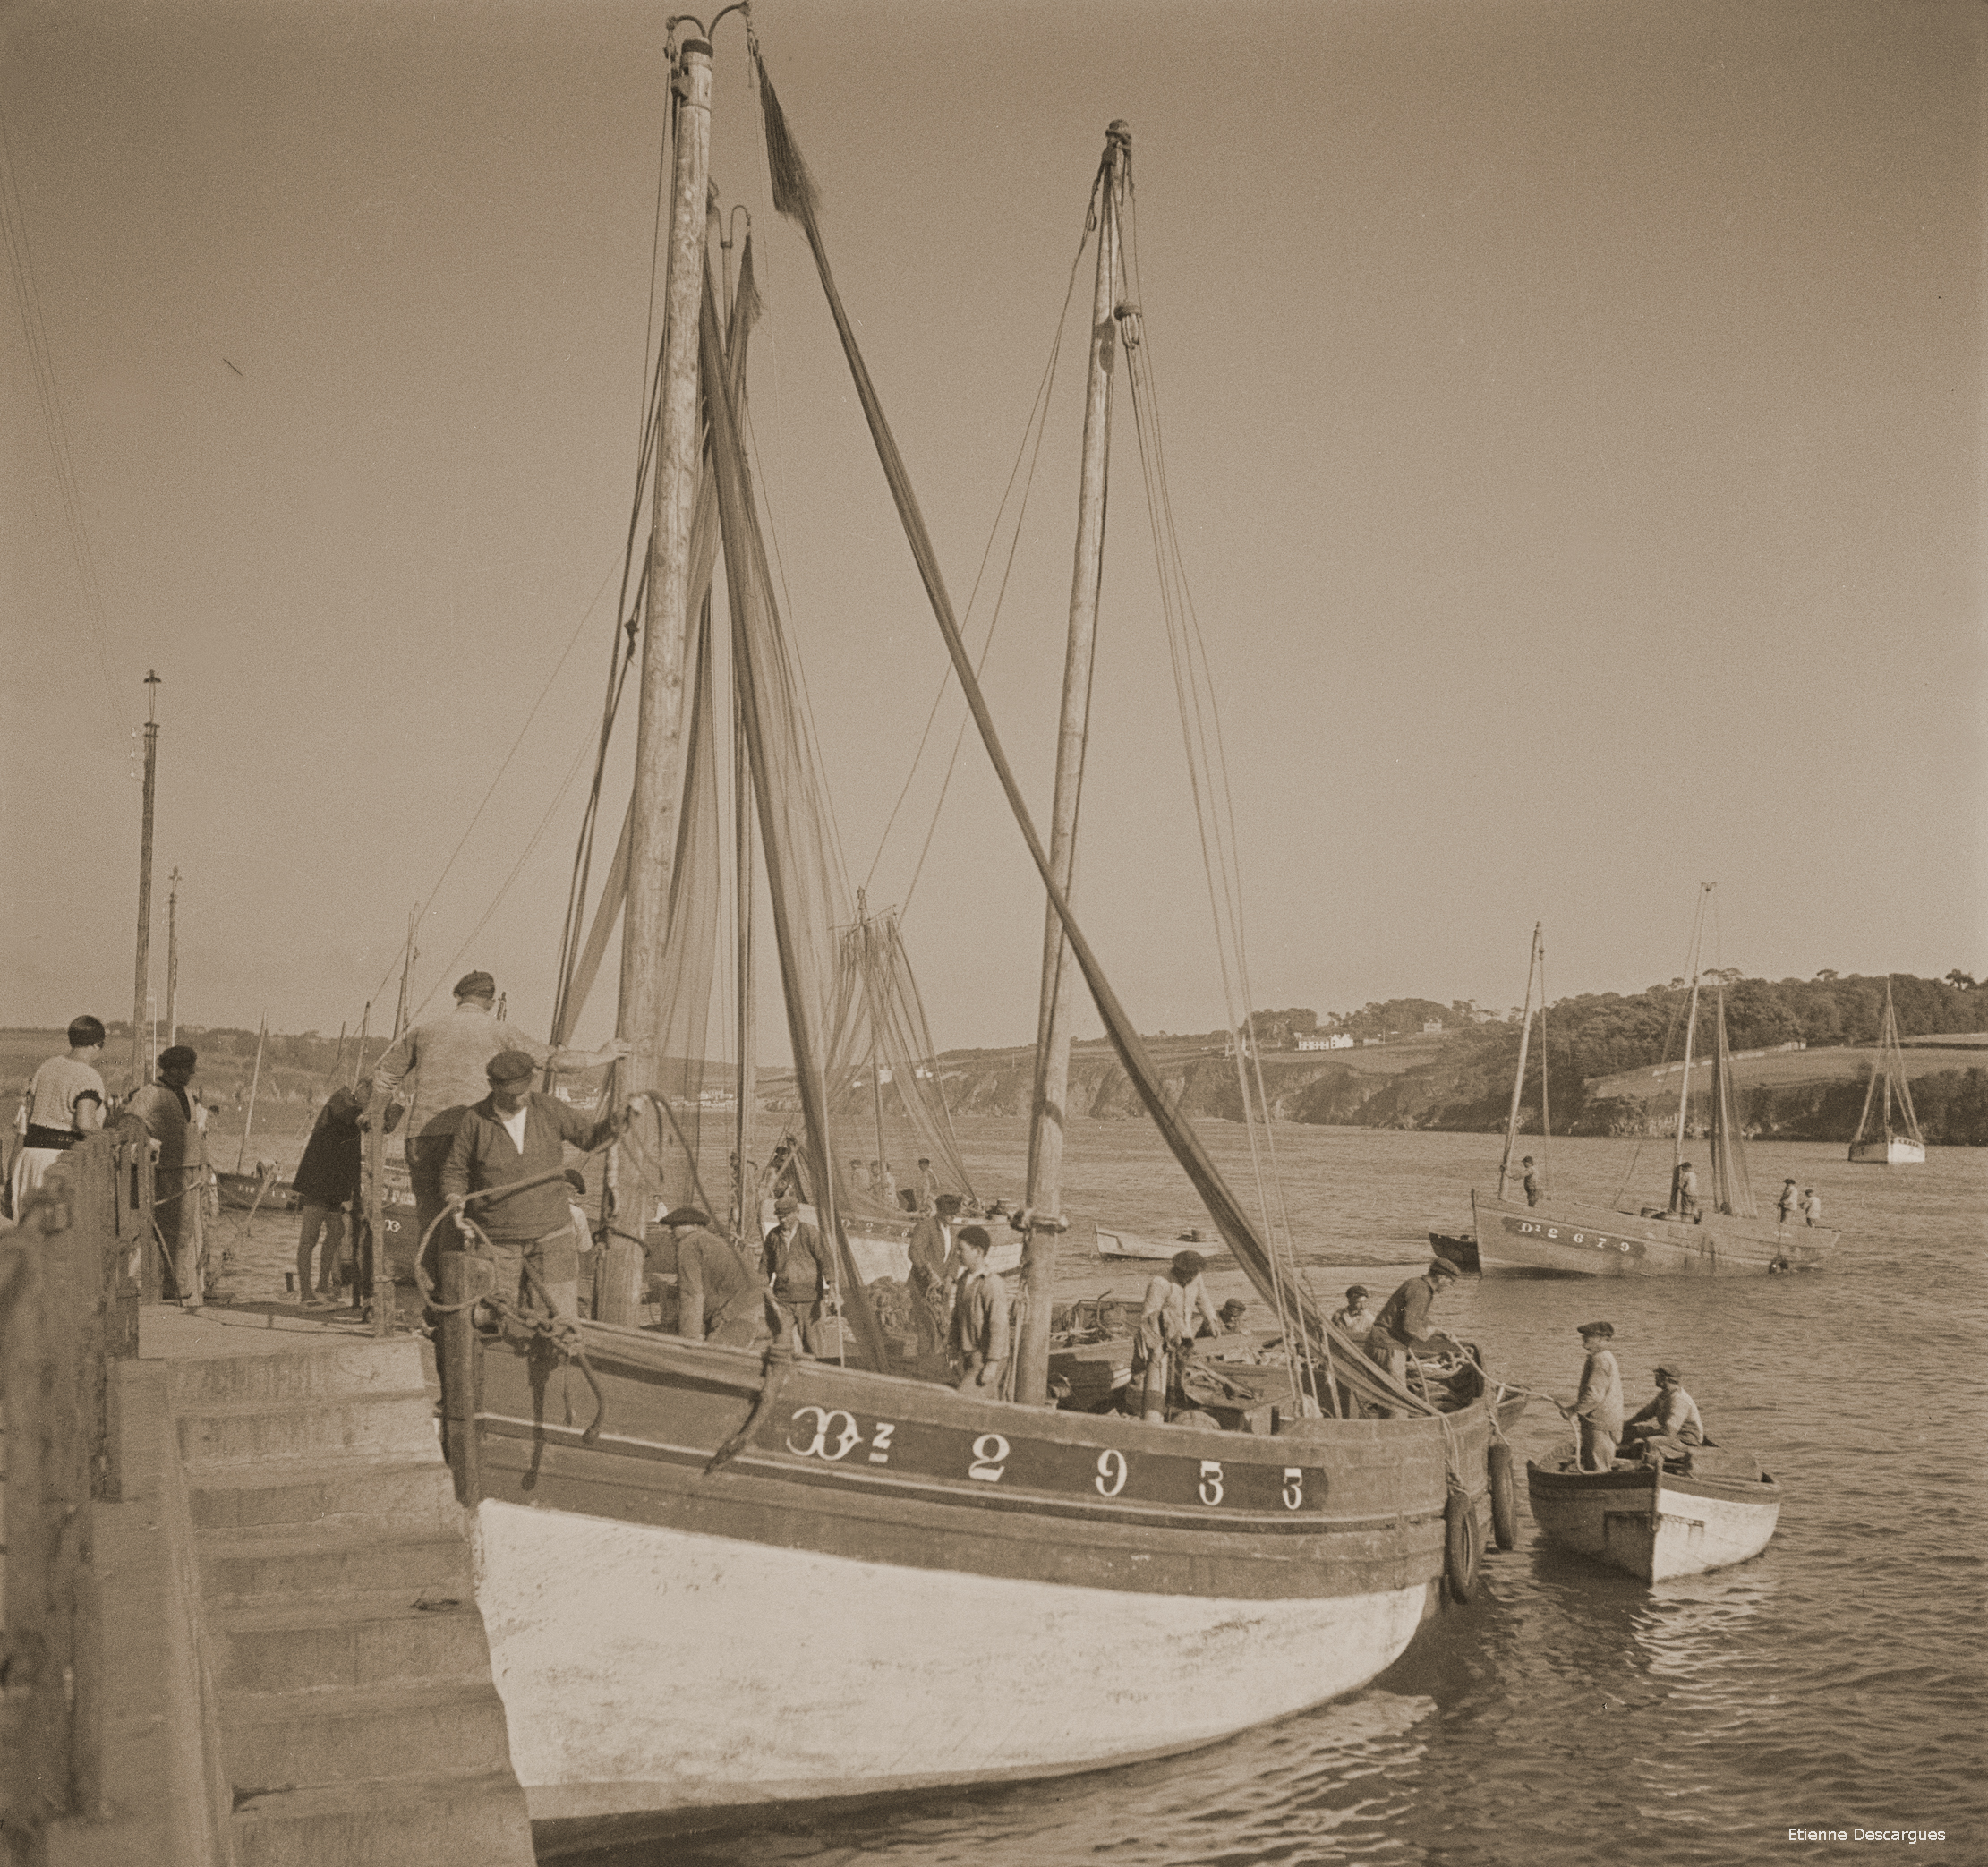 Source : Musée de Bretagne, photo Etienne Descargues, vers 1930. Le canot "Cherche Pain II" est visible au second plan, à droite.